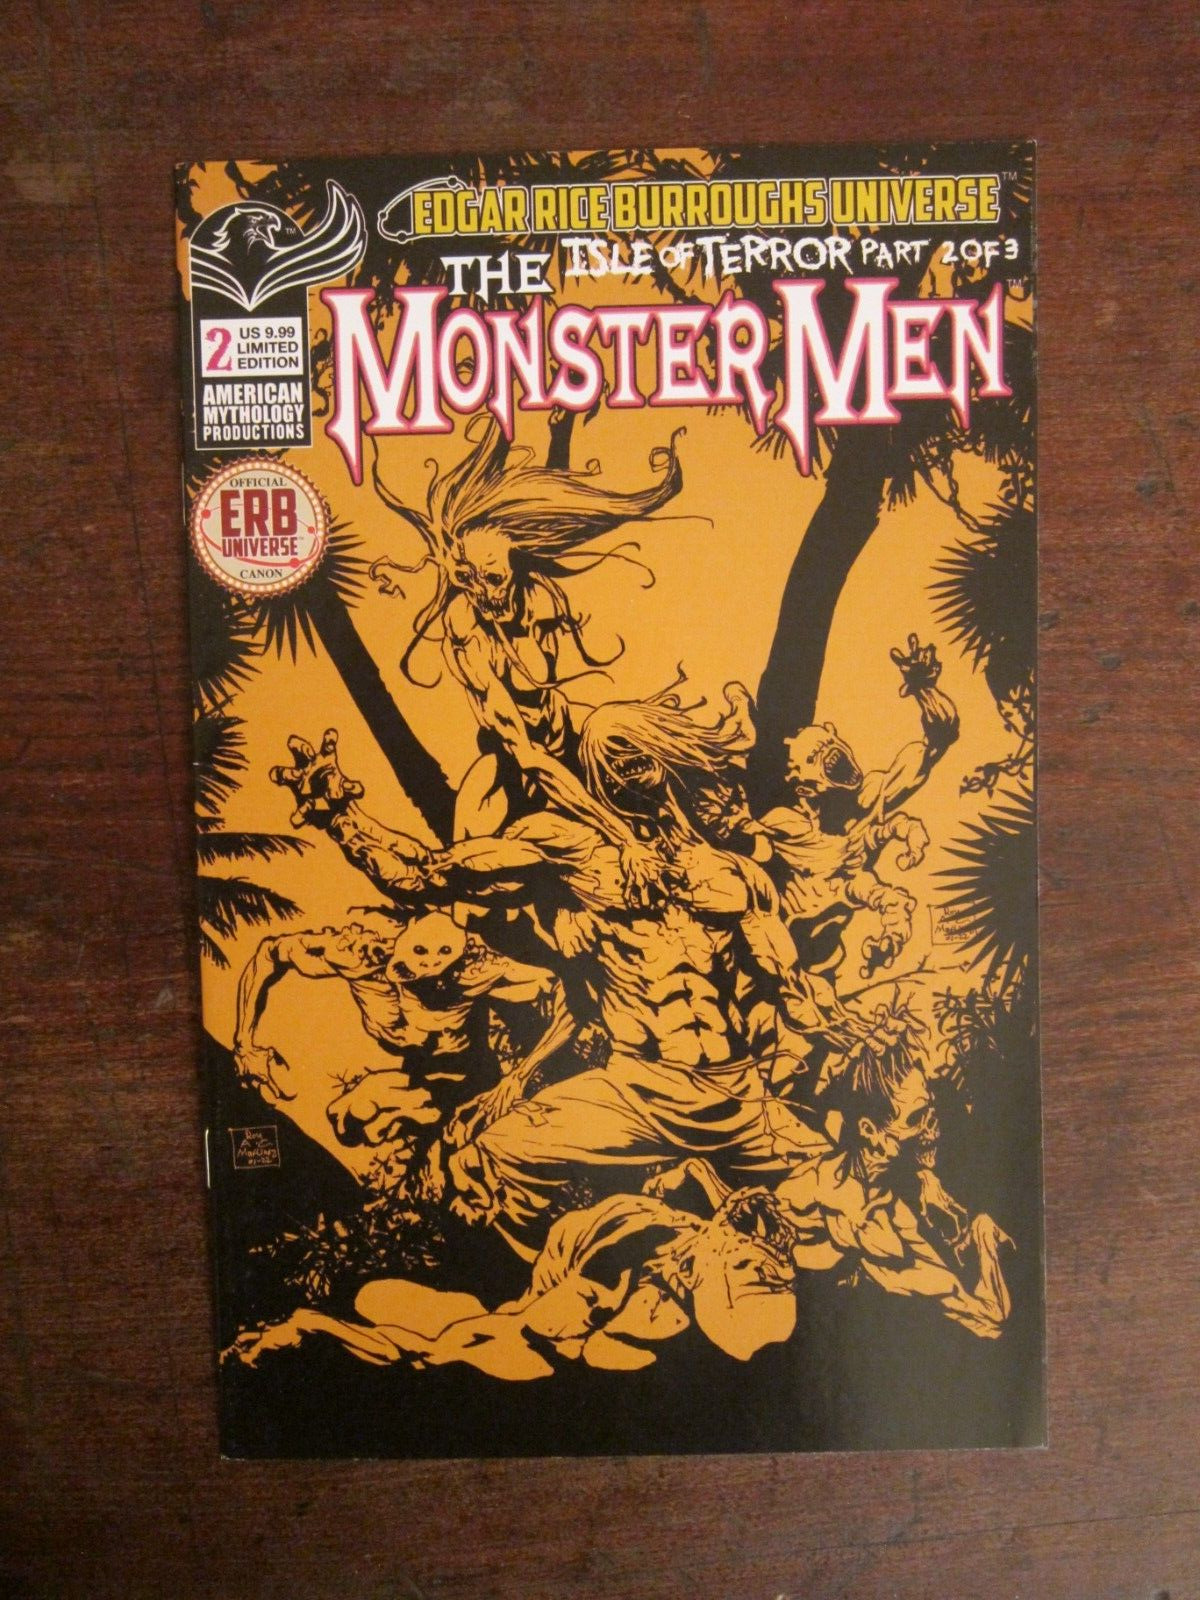 Monster Men: Isle of Terror #2 - Roy Allen Martinez art - American Mythology